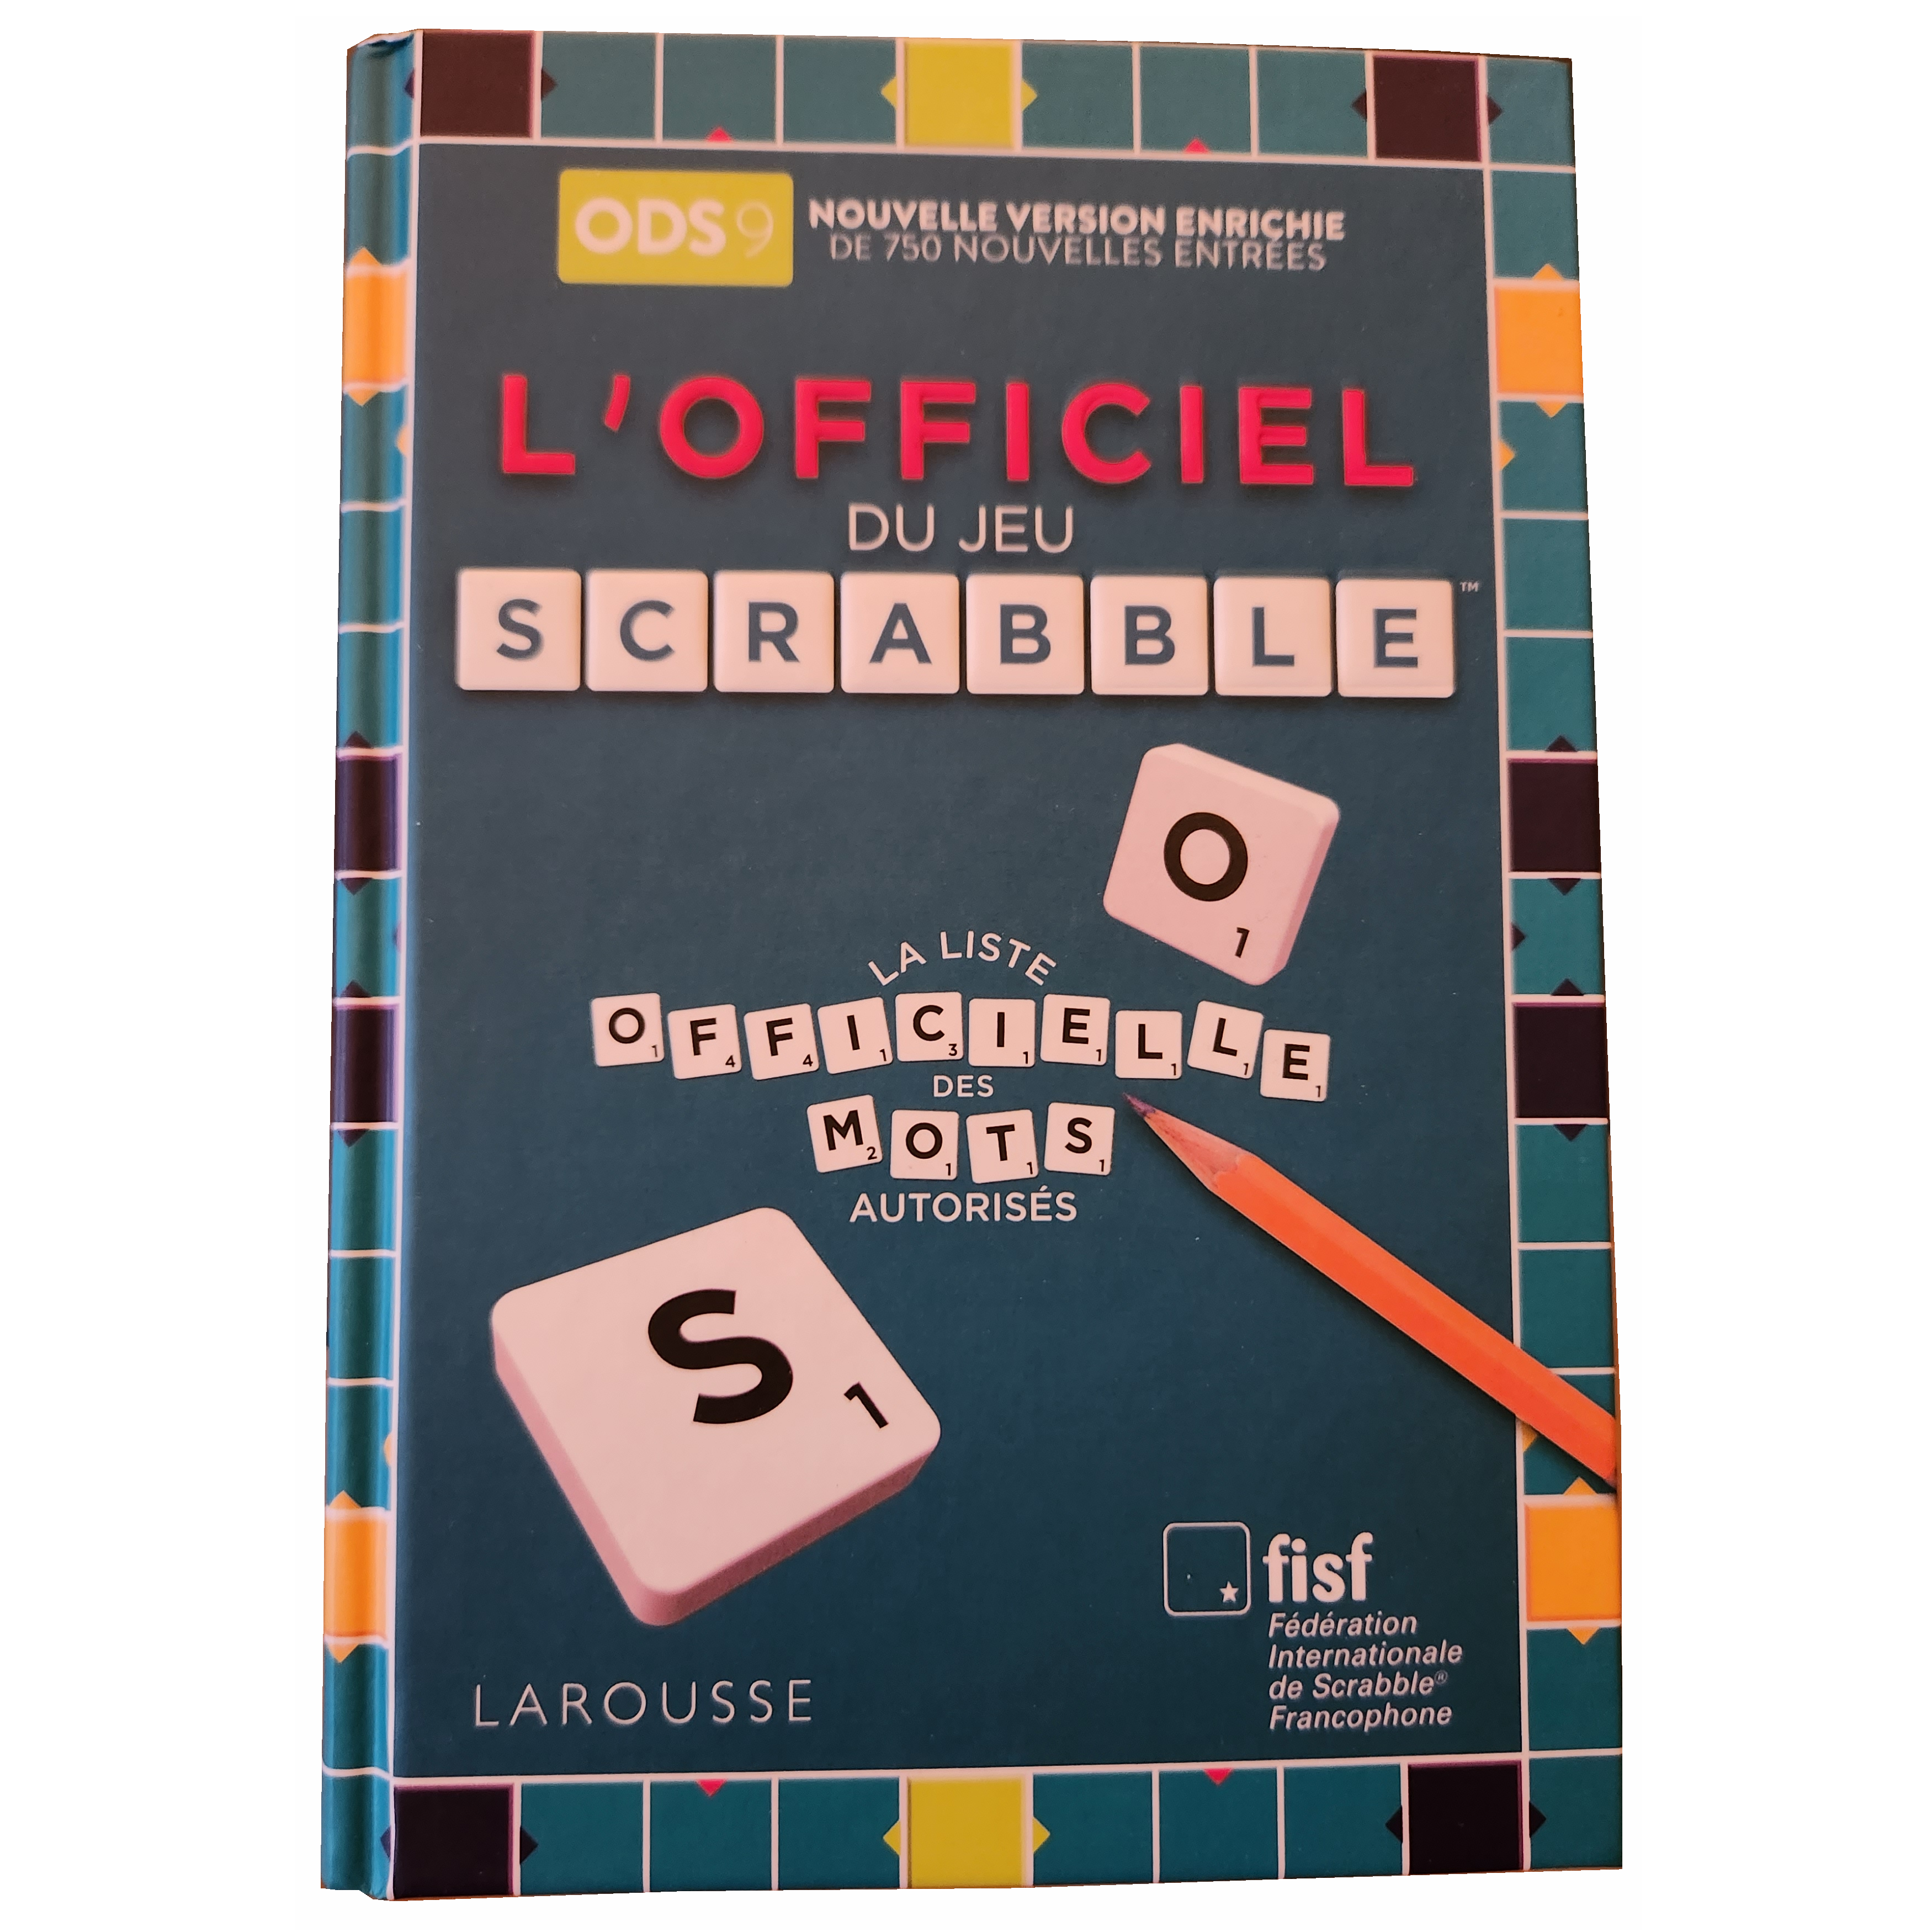 Dictionnaire Officiel du Scrabble ODS 9 - FSSc - Fédération Suisse de  Scrabble